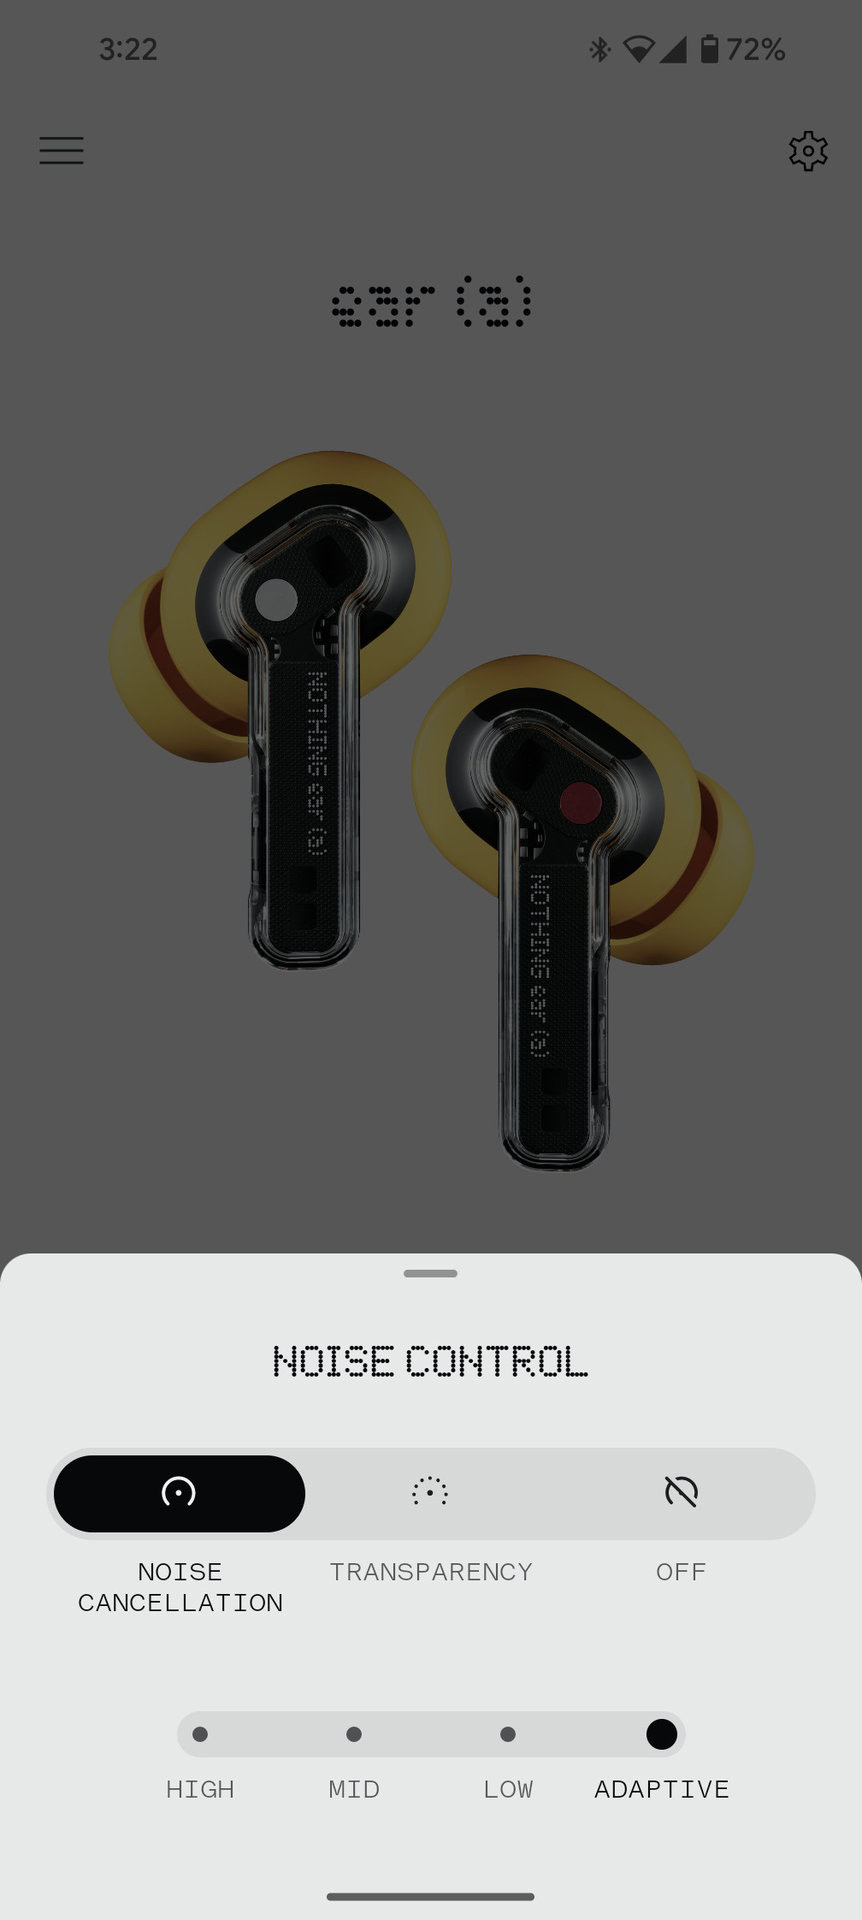 nic x zrzut ekranu aplikacji ucho z redukcją szumów